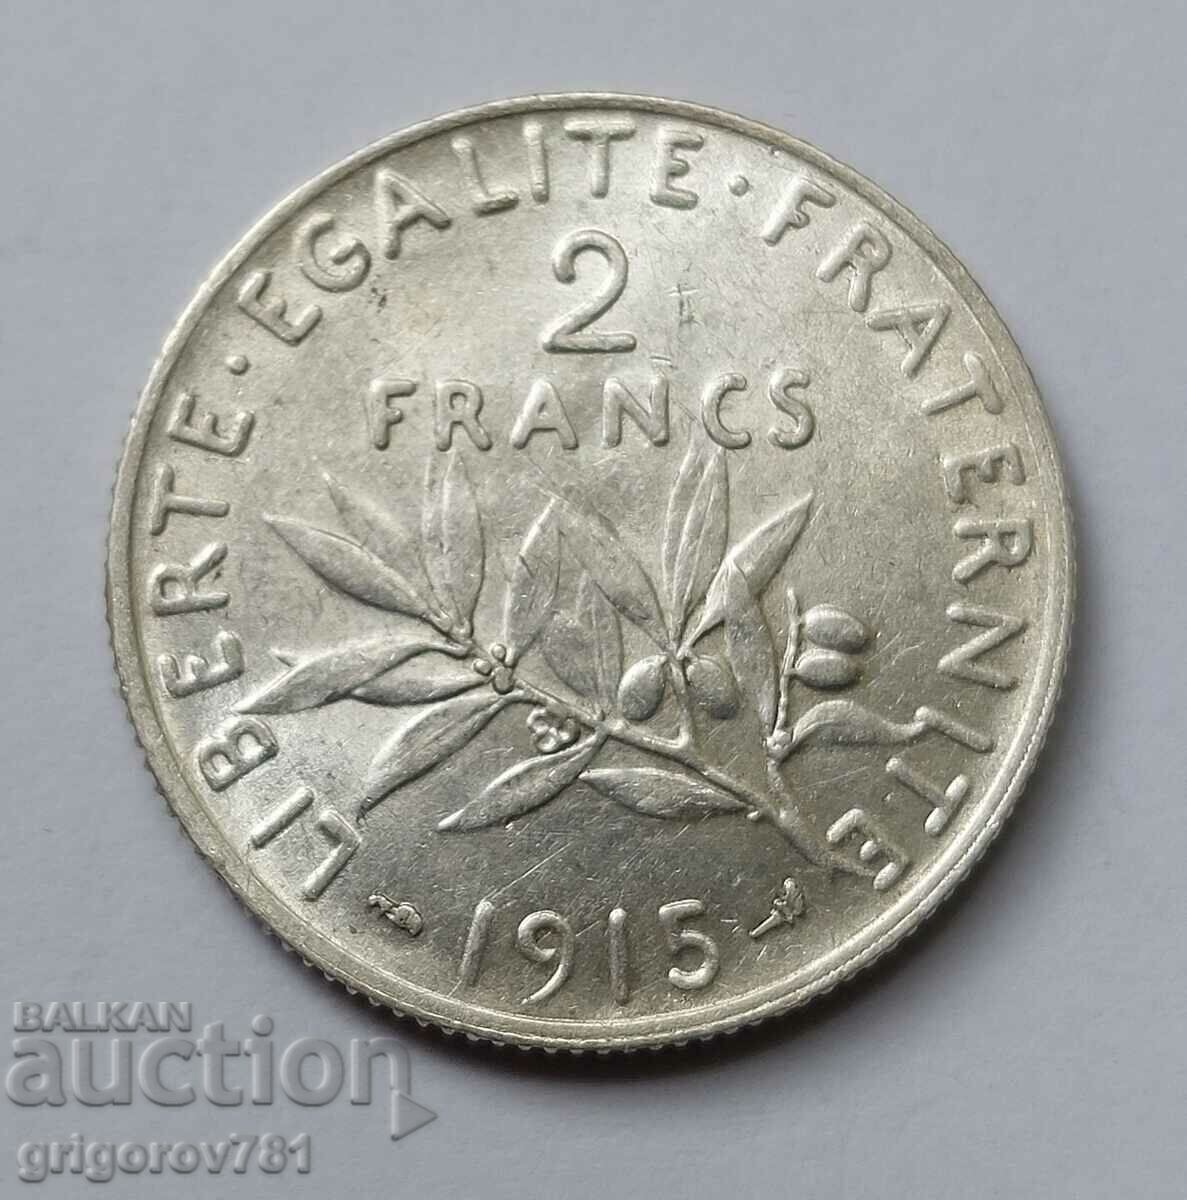 2 Φράγκα Ασήμι Γαλλία 1915 - Ασημένιο νόμισμα #78